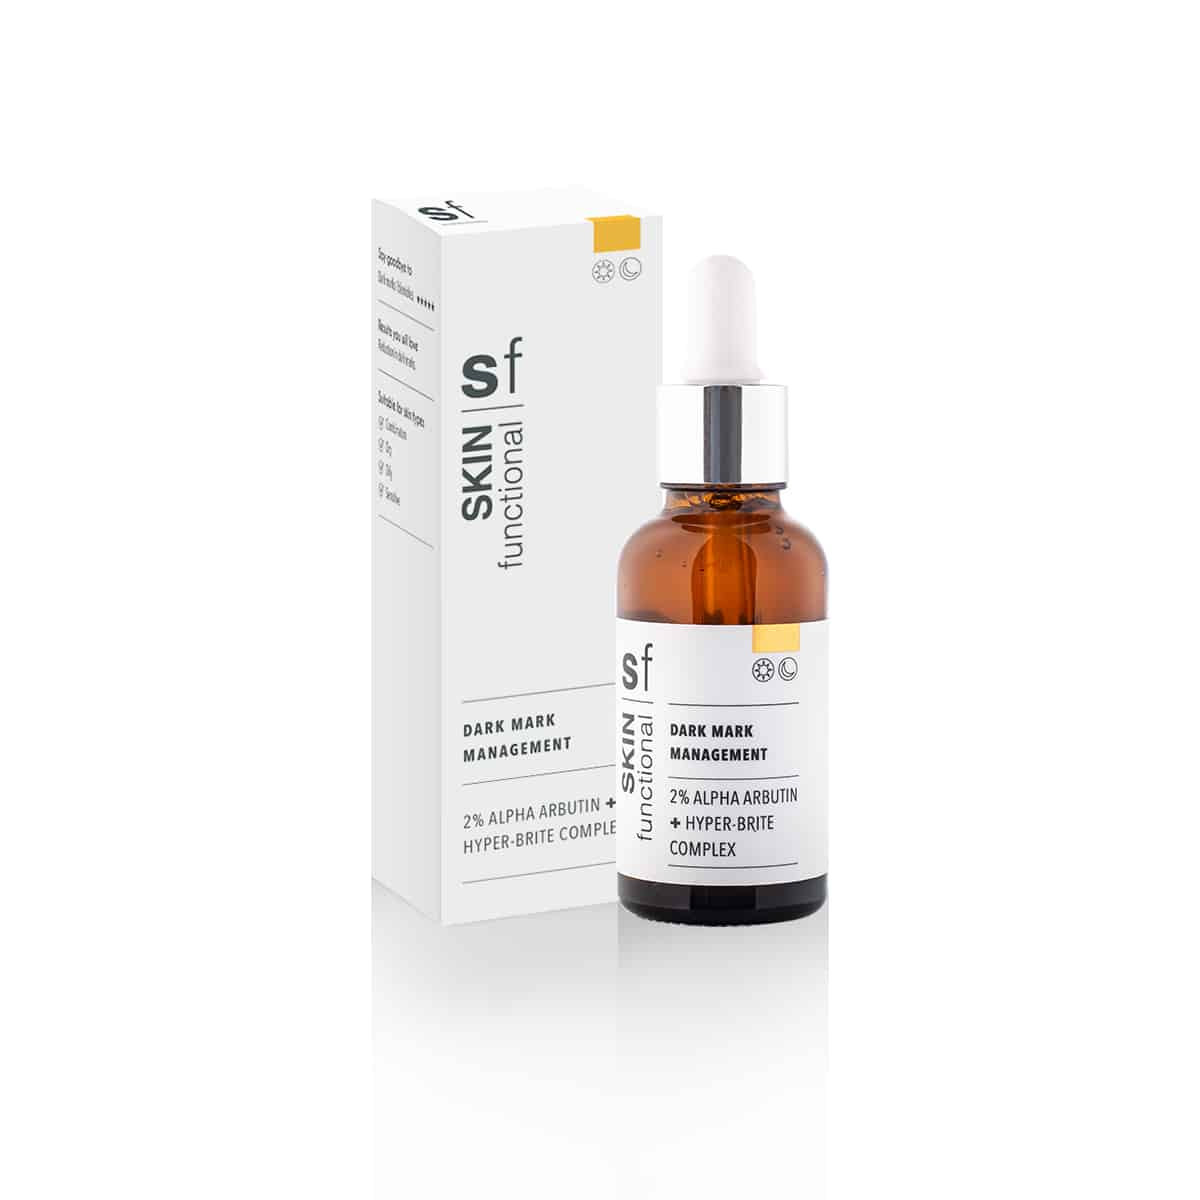 A bottle of SKIN Functional - 2% Alpha Arbutin + Hyper-Brite Complex - Dark Mark Management serum for skin brightening on a white background.